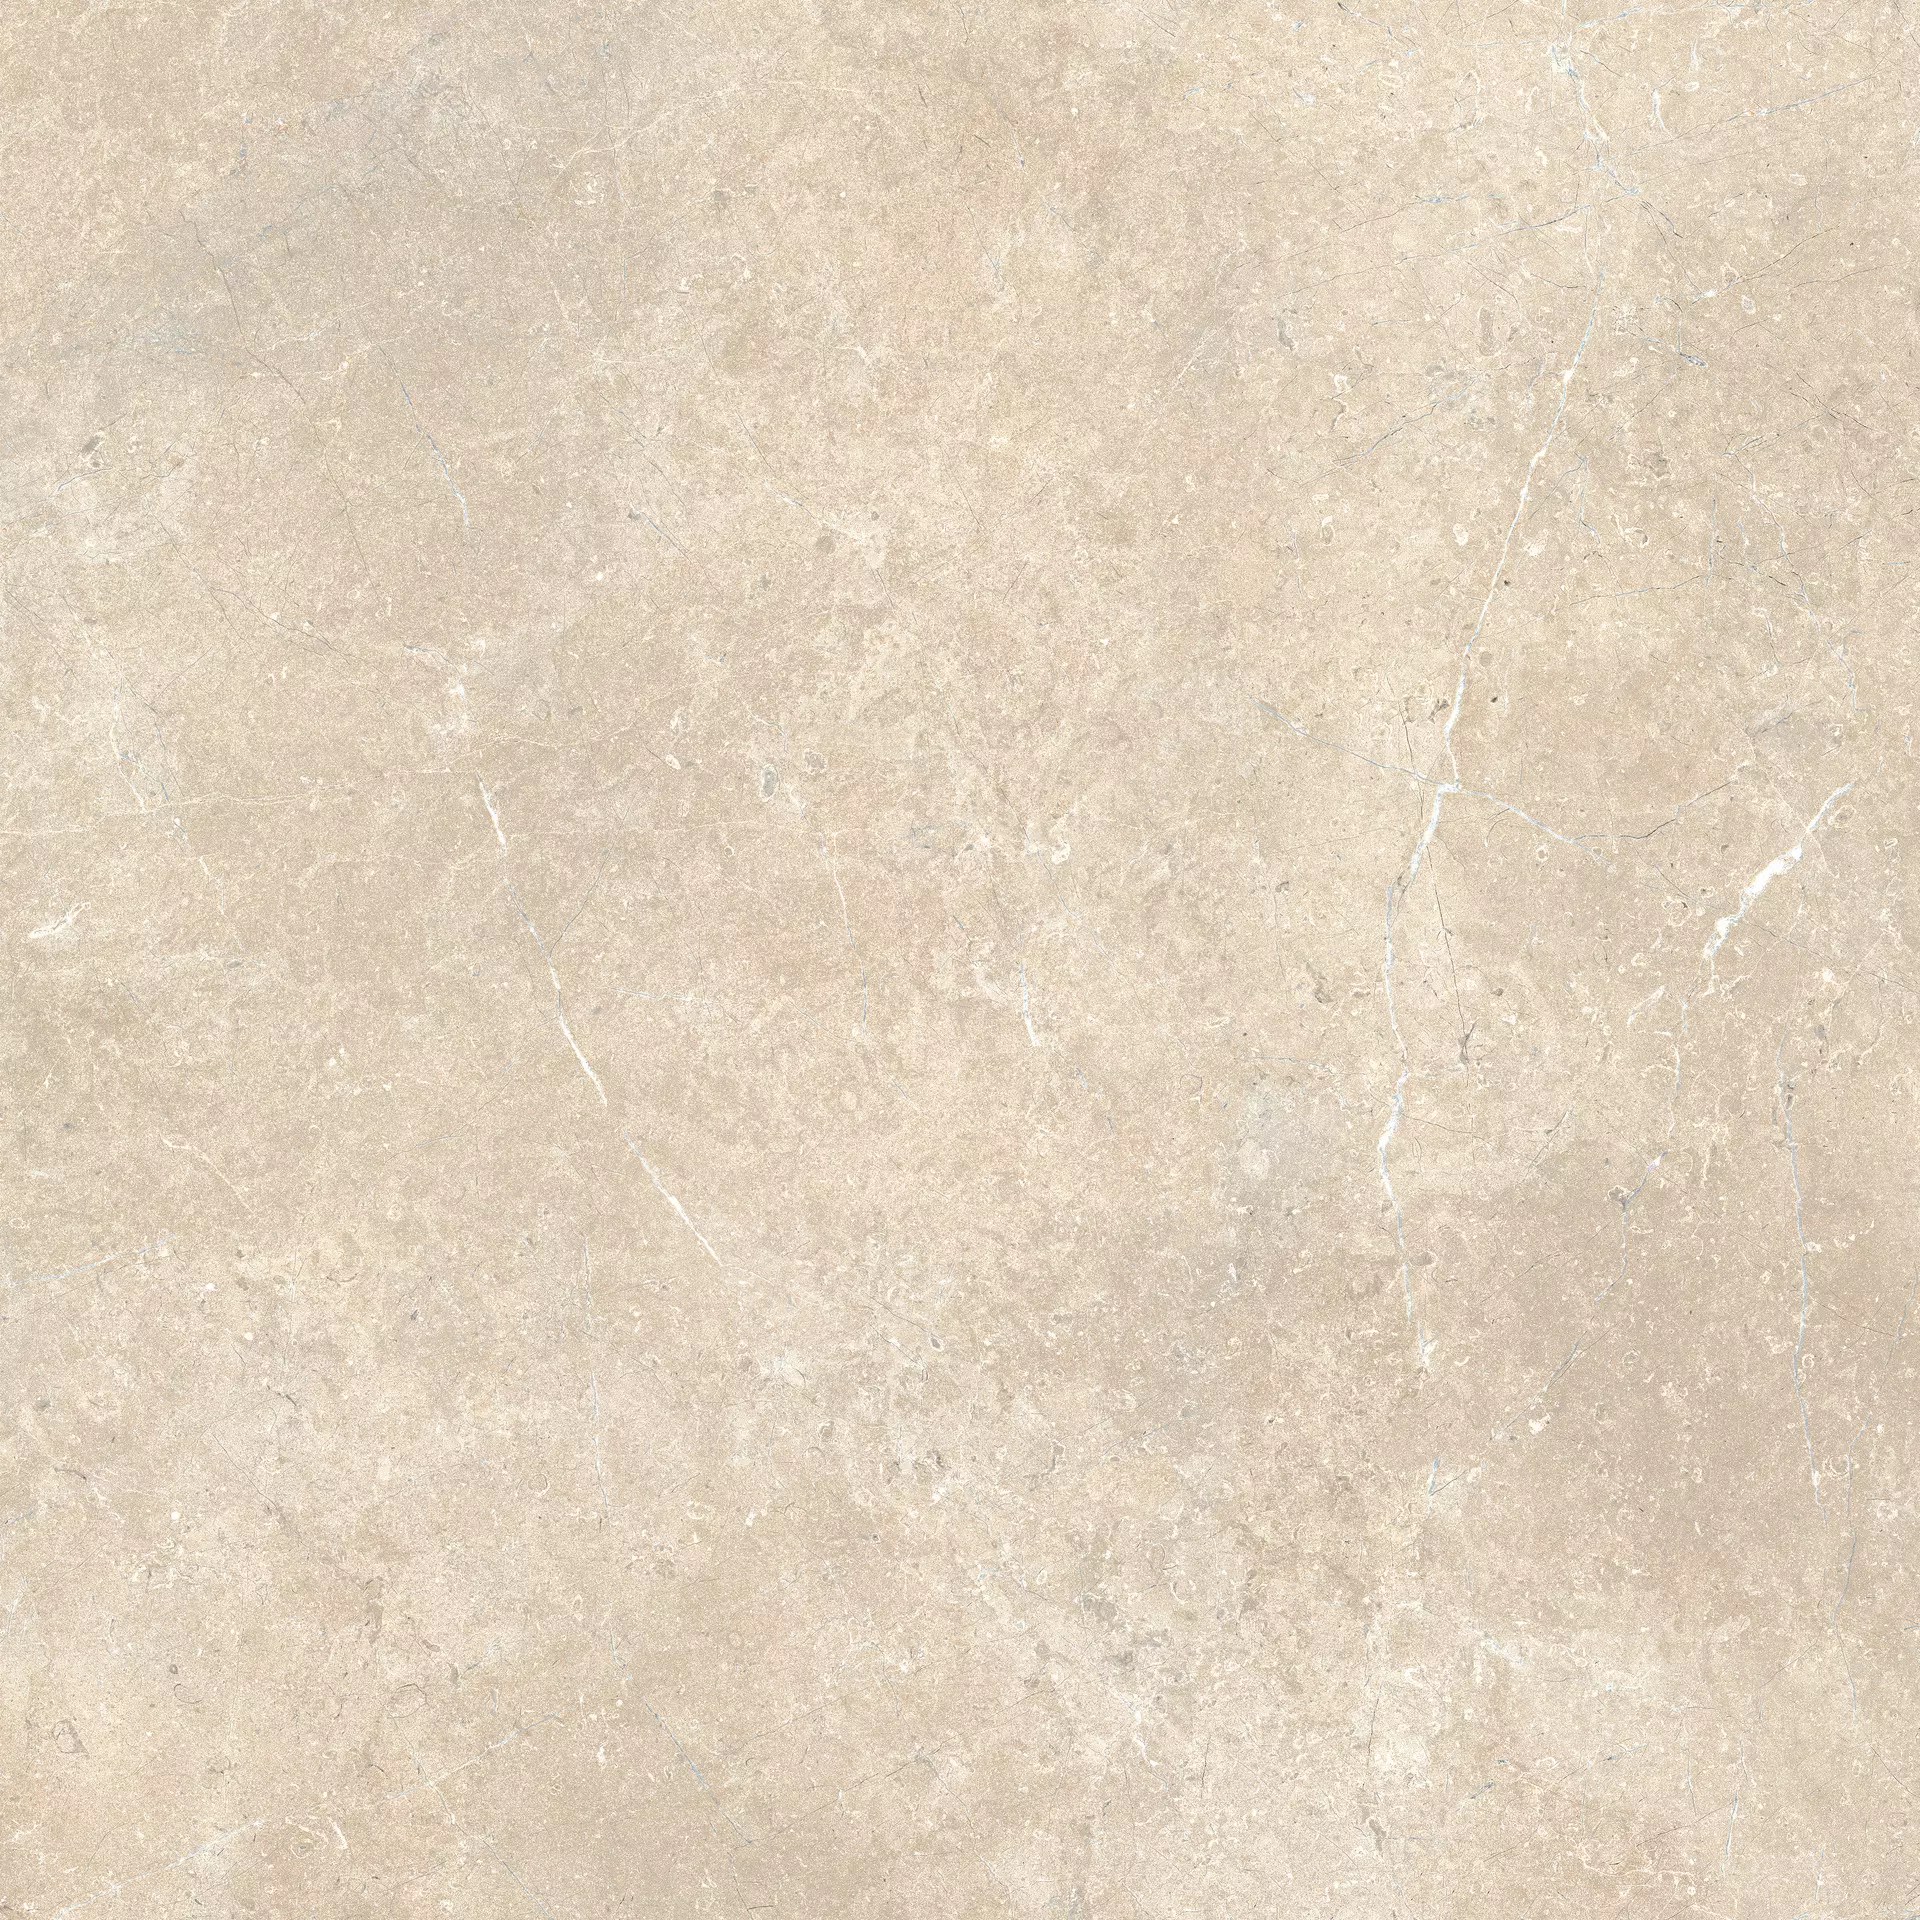 Bodenfliese,Wandfliese Marazzi Mystone Limestone Sand Naturale – Matt Sand M908 matt natur 120x120cm rektifiziert 9,5mm